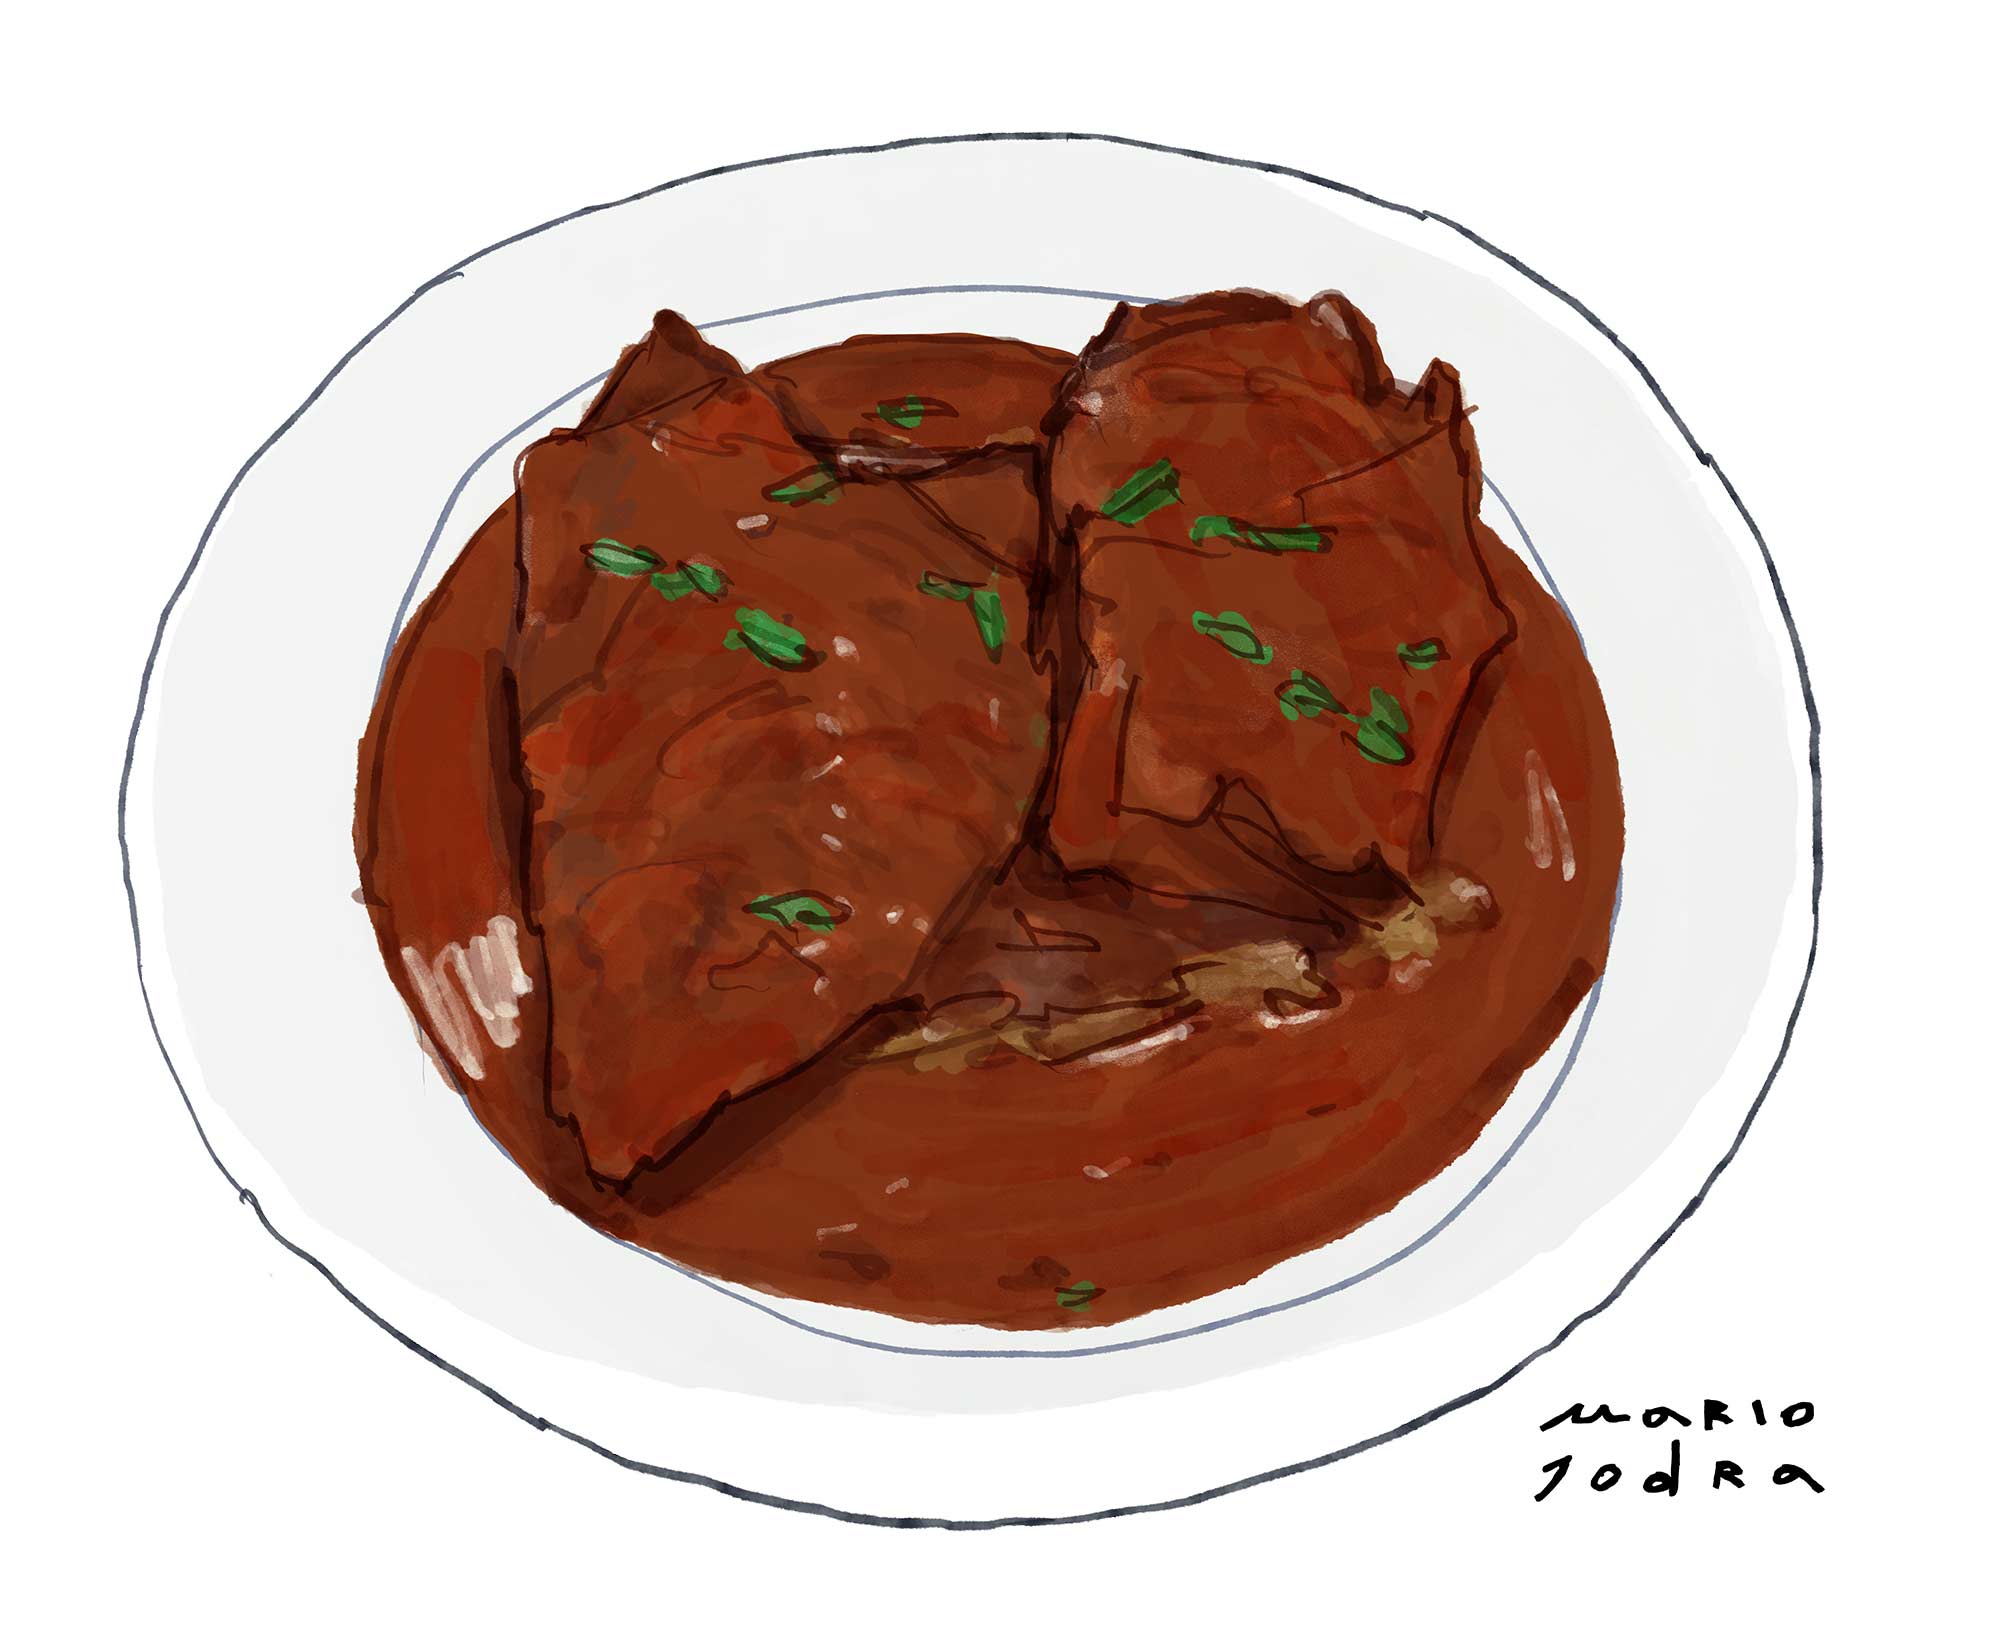 Mario Jodra illustration Art - Café Gijón: Carne en salsa